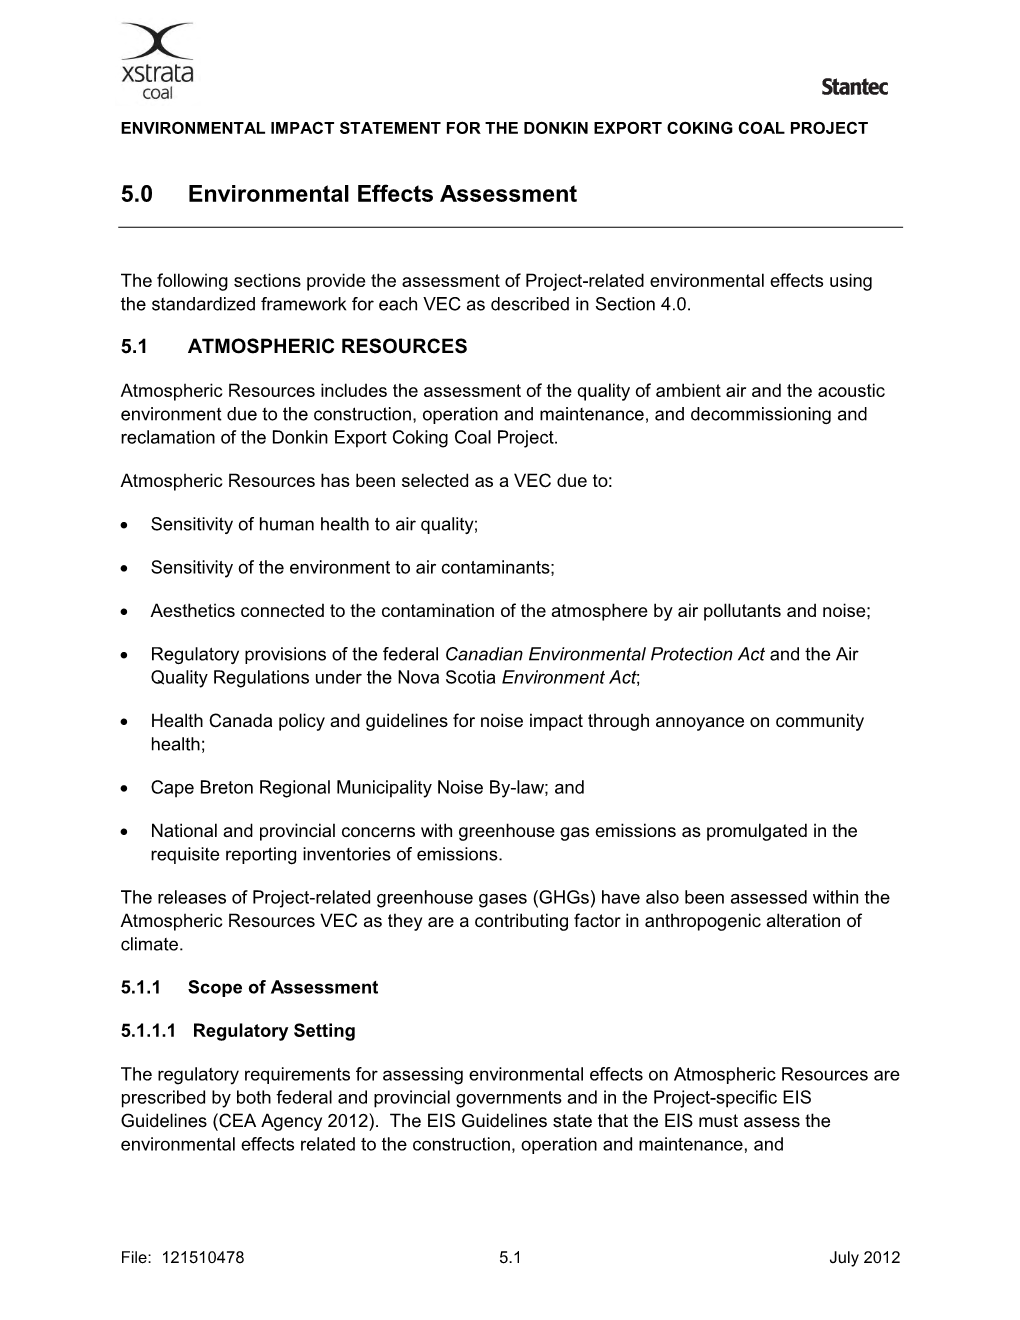 5.0 Environmental Effects Assessment